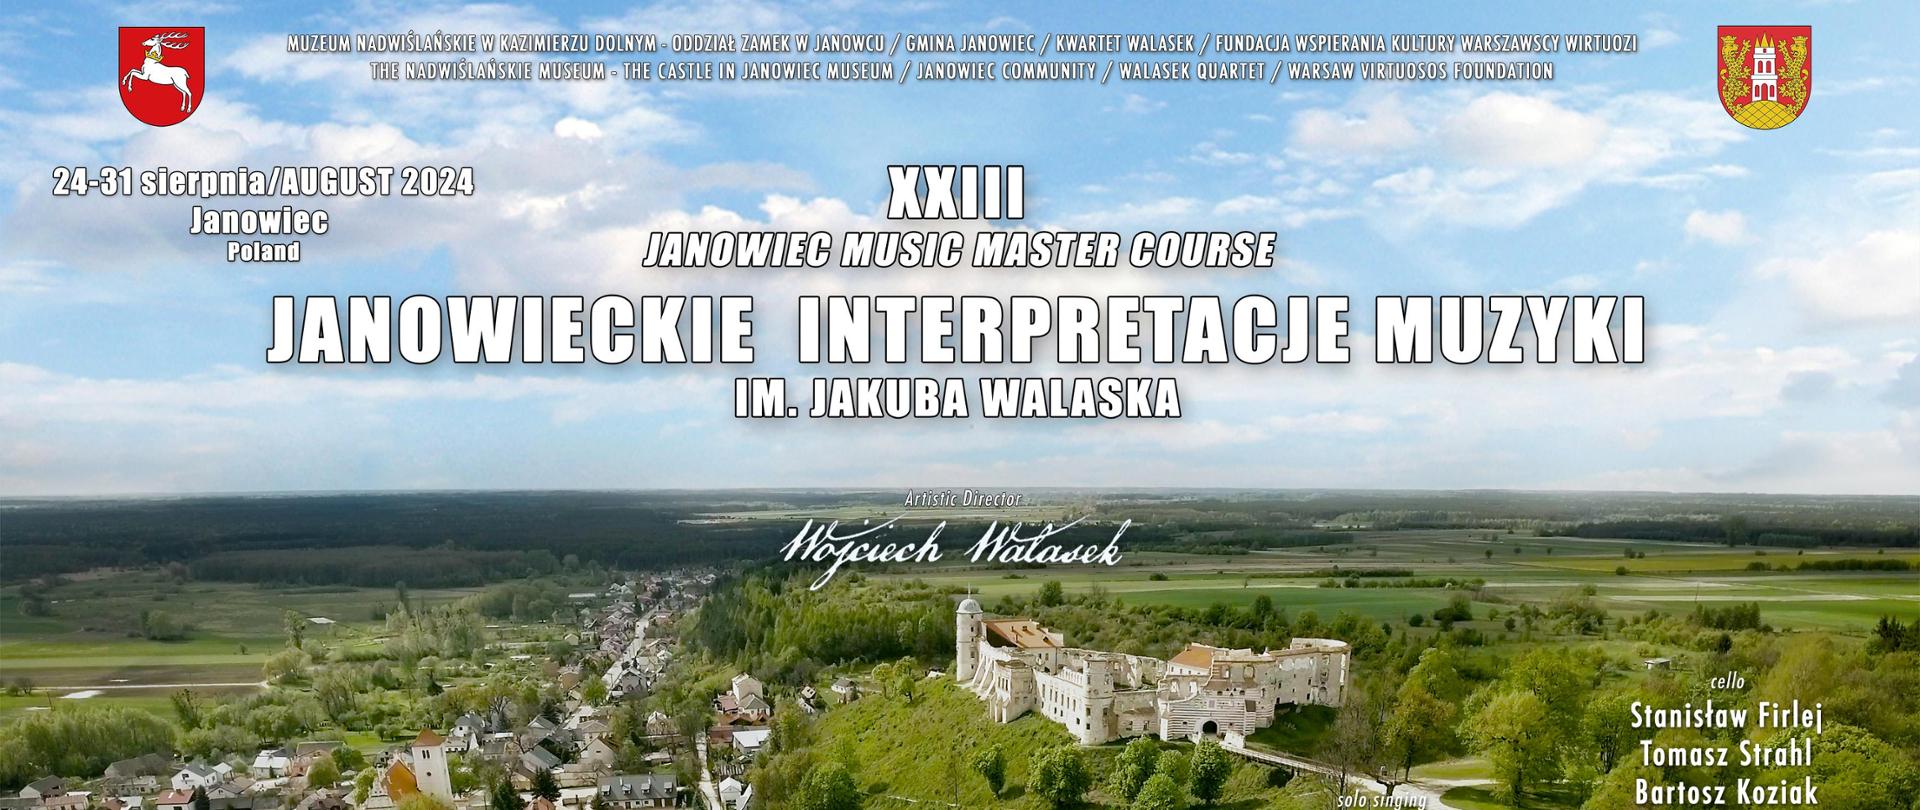 XXIII Janowieckie Interpretacje Muzyki im. Jakuba Walaska - 24-31 sierpnia 2024